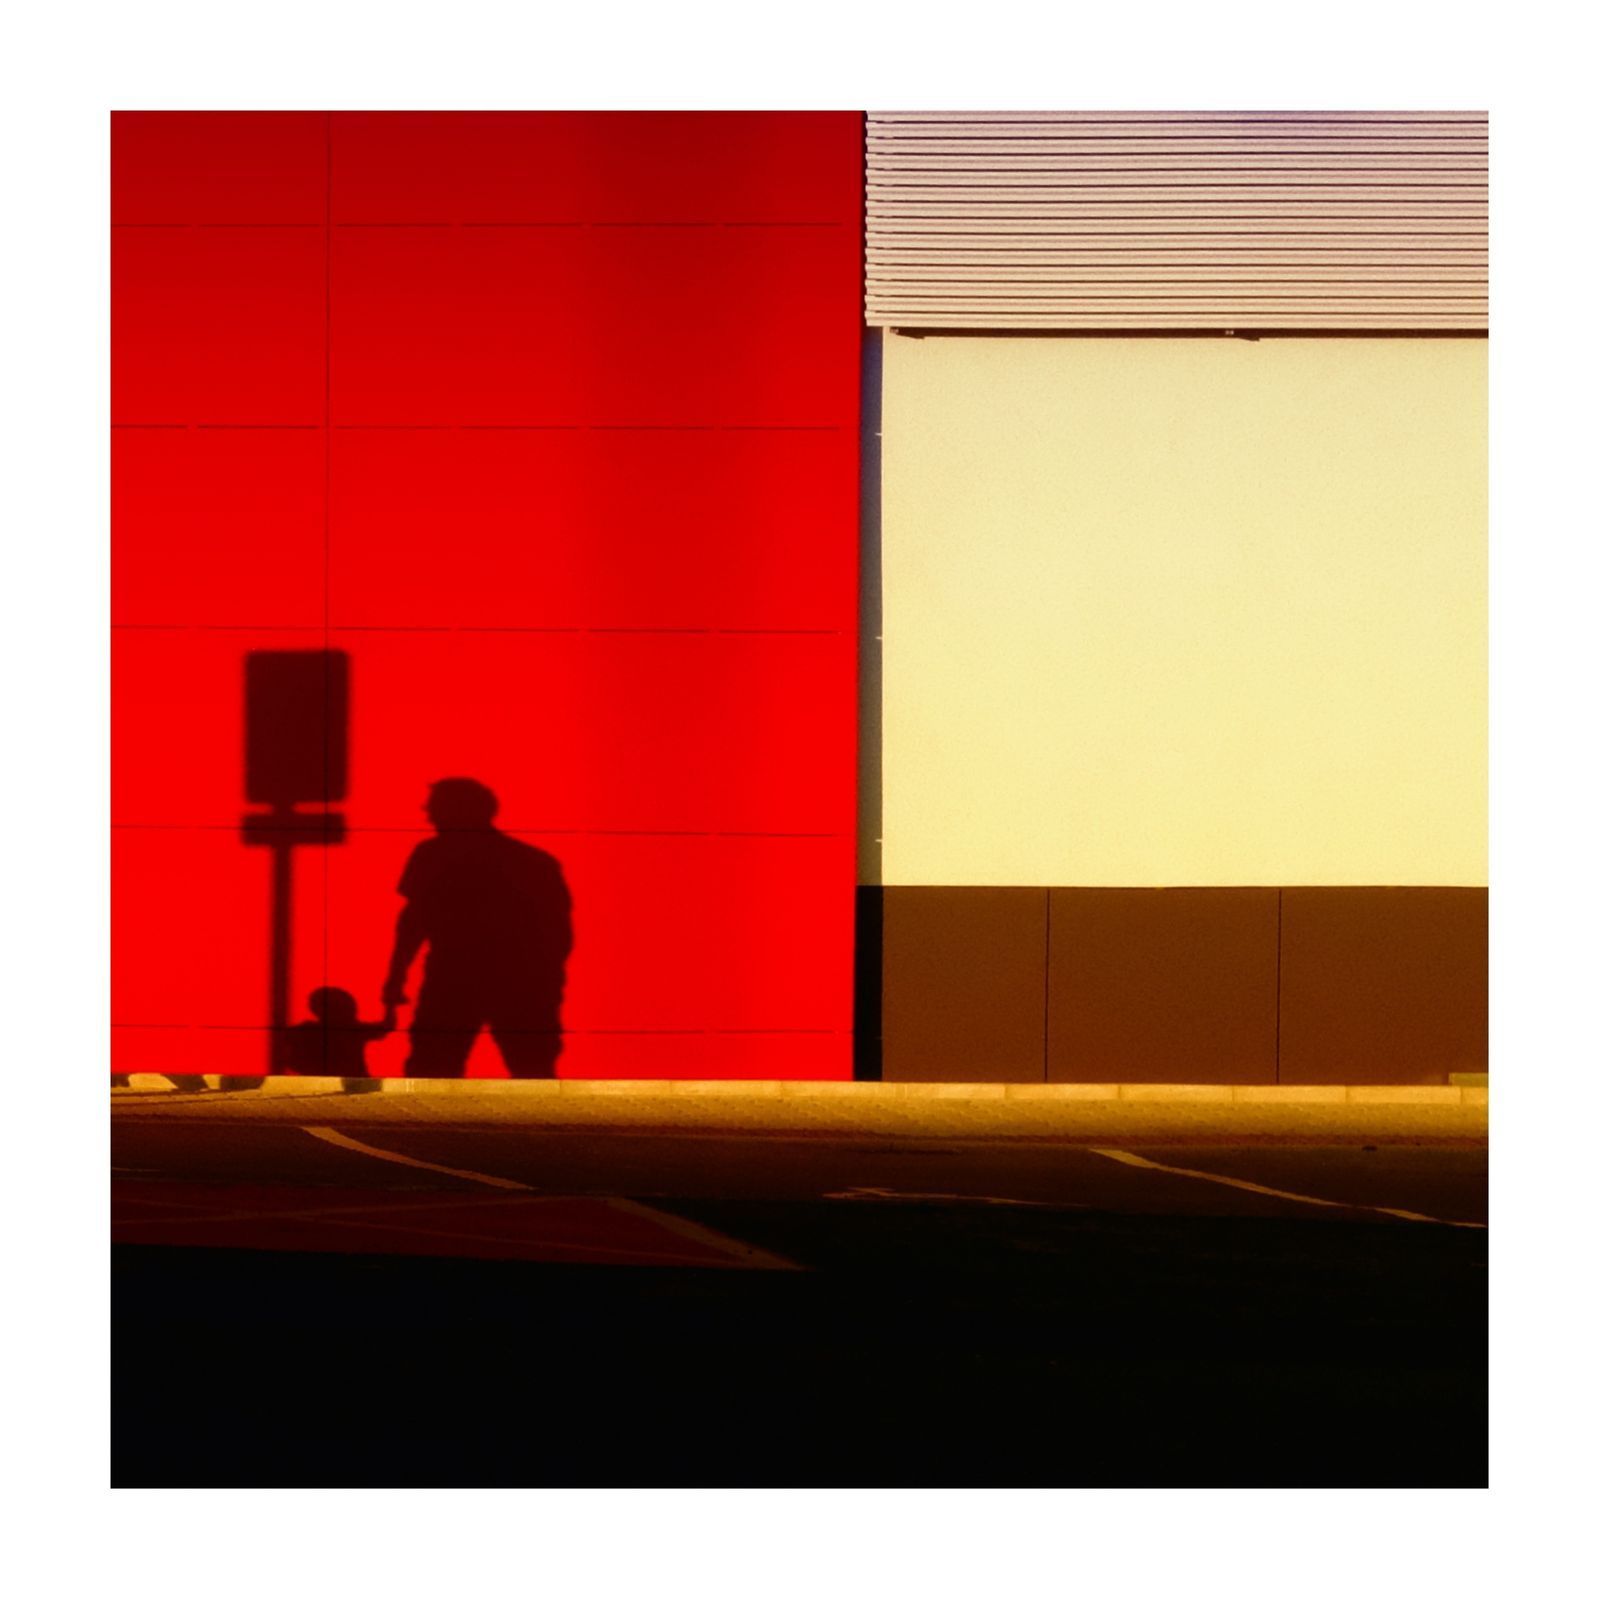 Jednorázové užití / Fotogalerie / Výstava v Bratislavě ukazuje poetický minimalismus ve fotografiích Oty Sládka